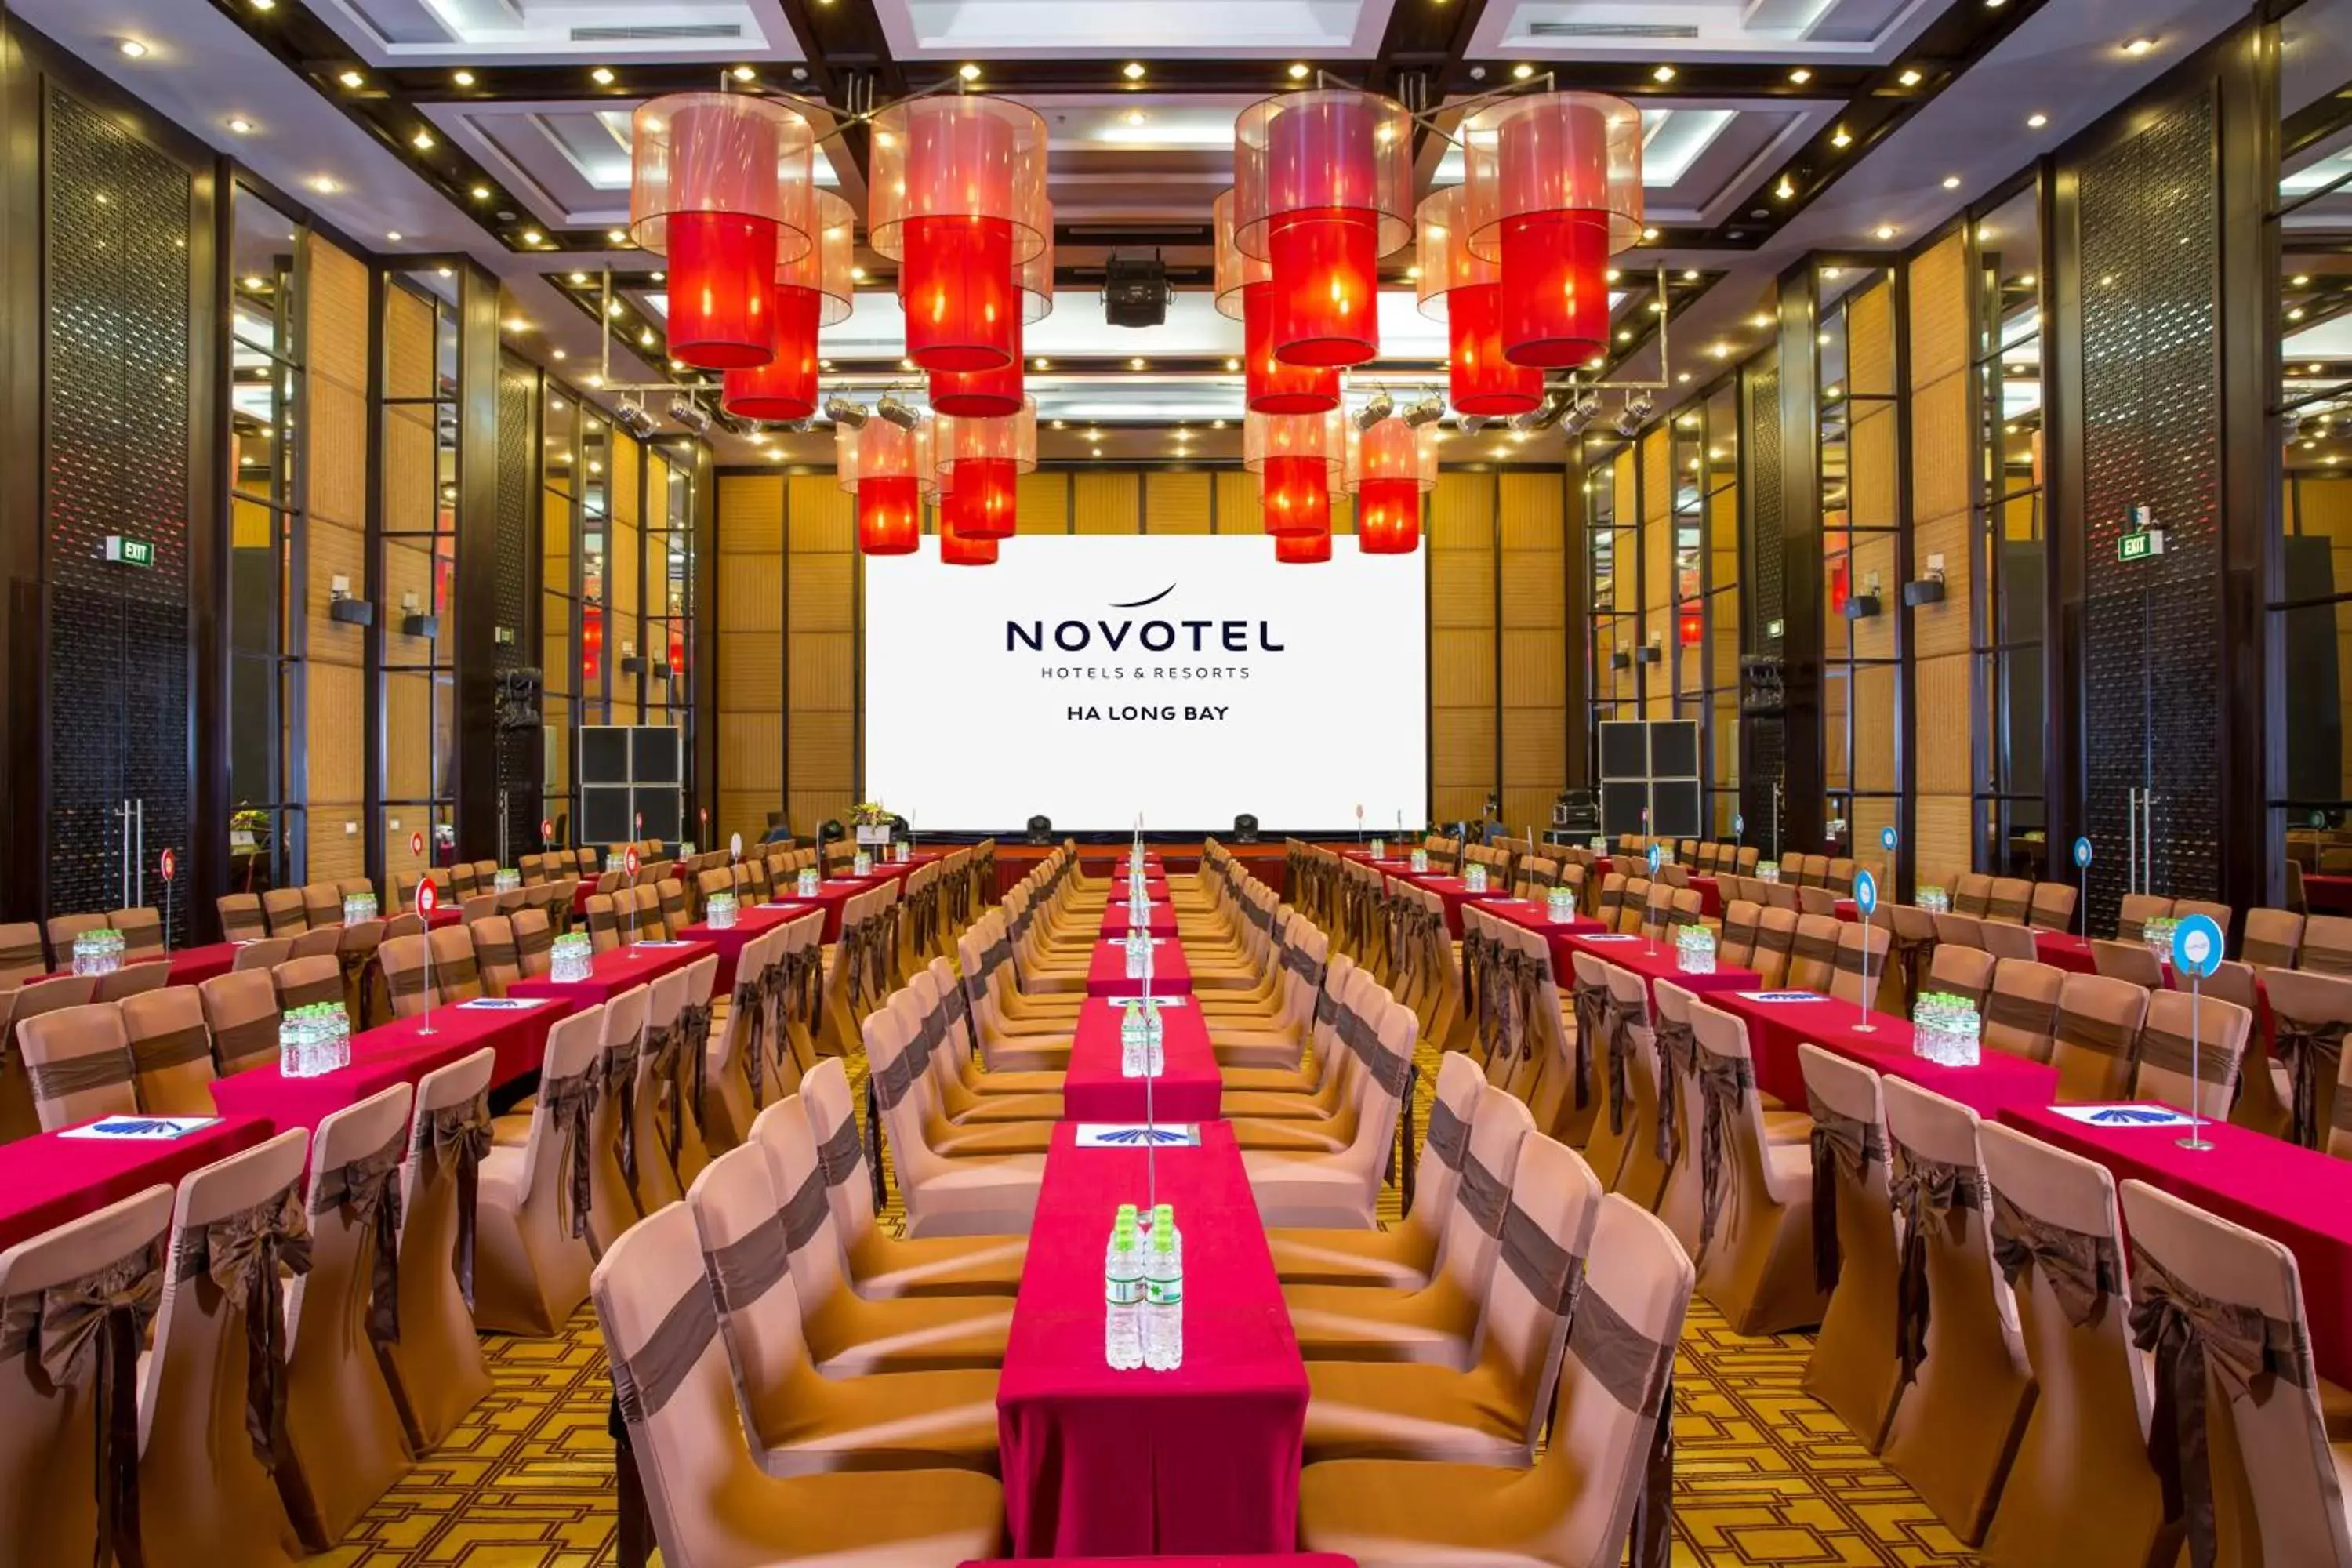 Banquet/Function facilities in Novotel Ha Long Bay Hotel